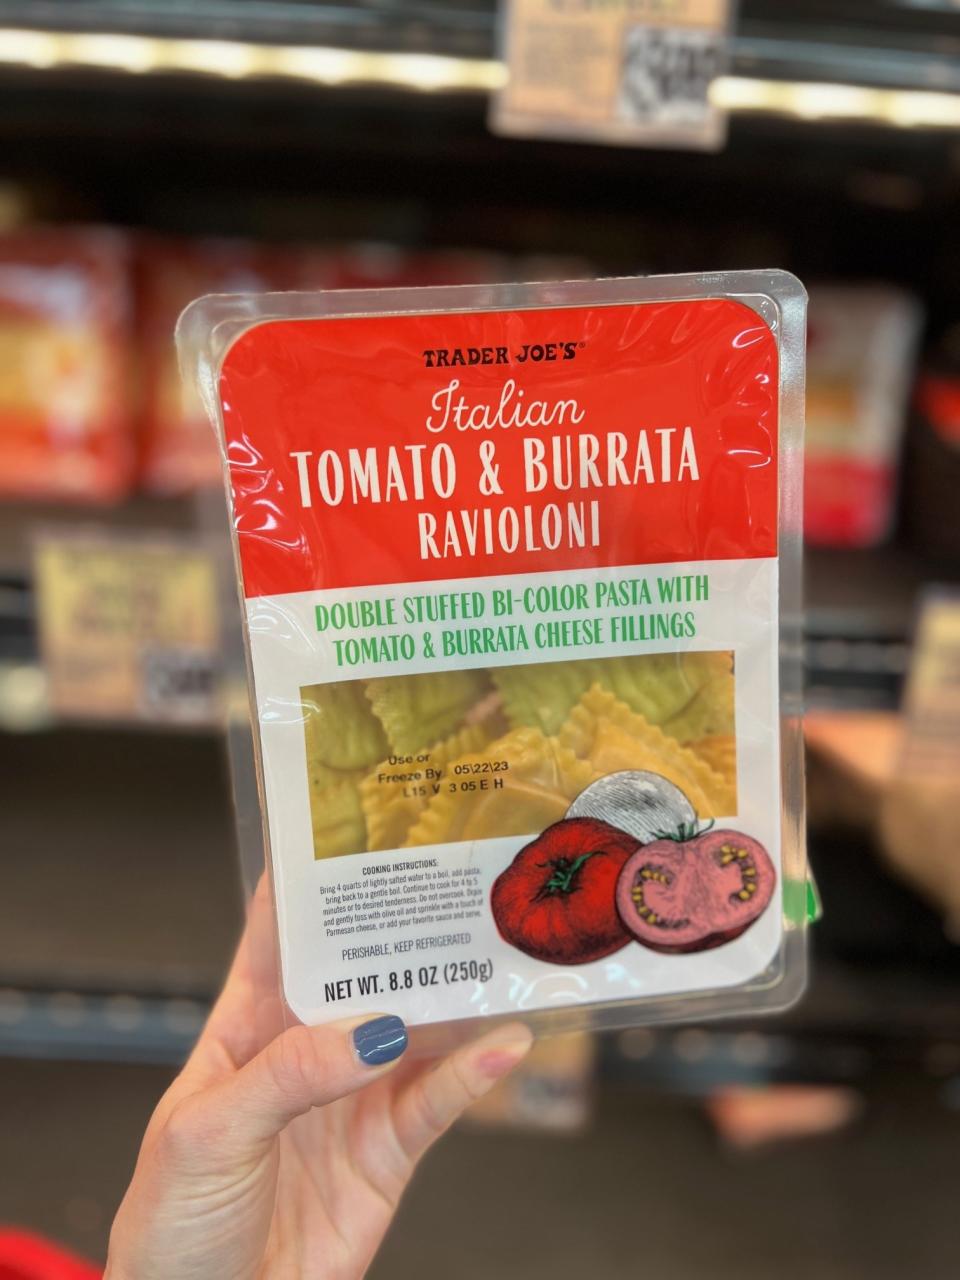 A package of Italian Tomato & Burrata Ravioloni: "double stuffed bi-color pasta with tomato & burrata cheese fillings"